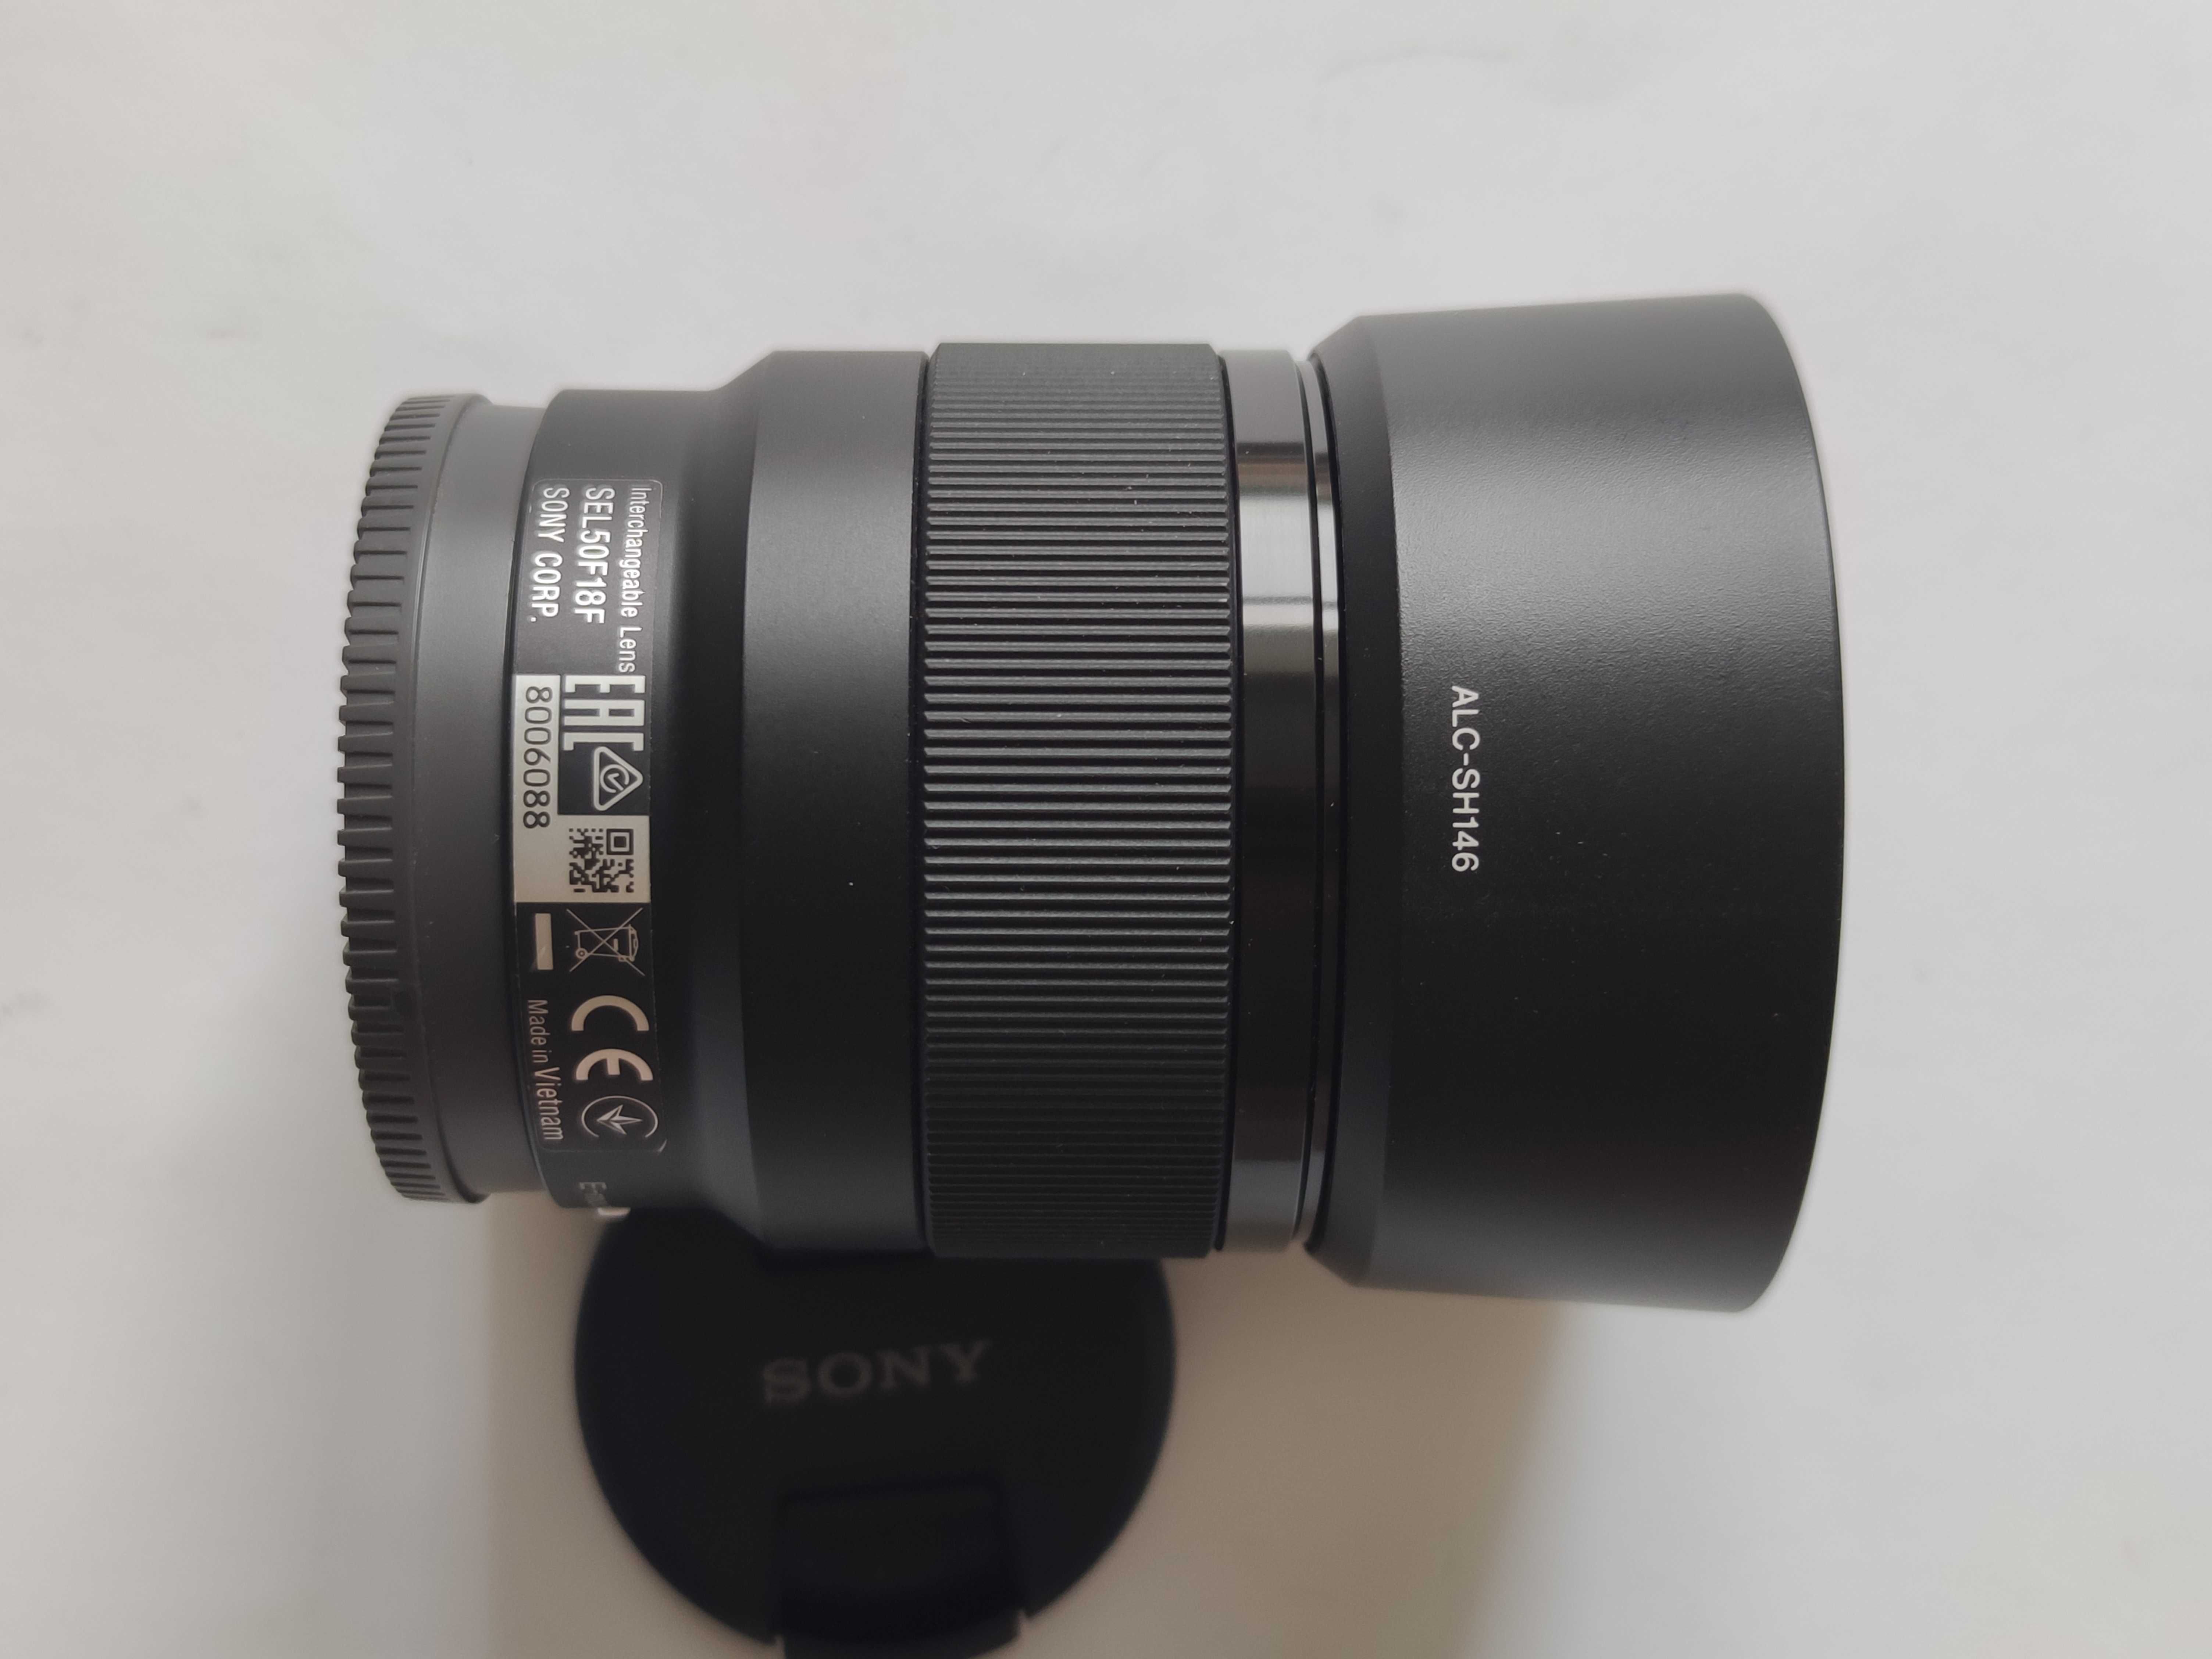 Sony FE 50mm f/1.8 (SEL-50F18F)